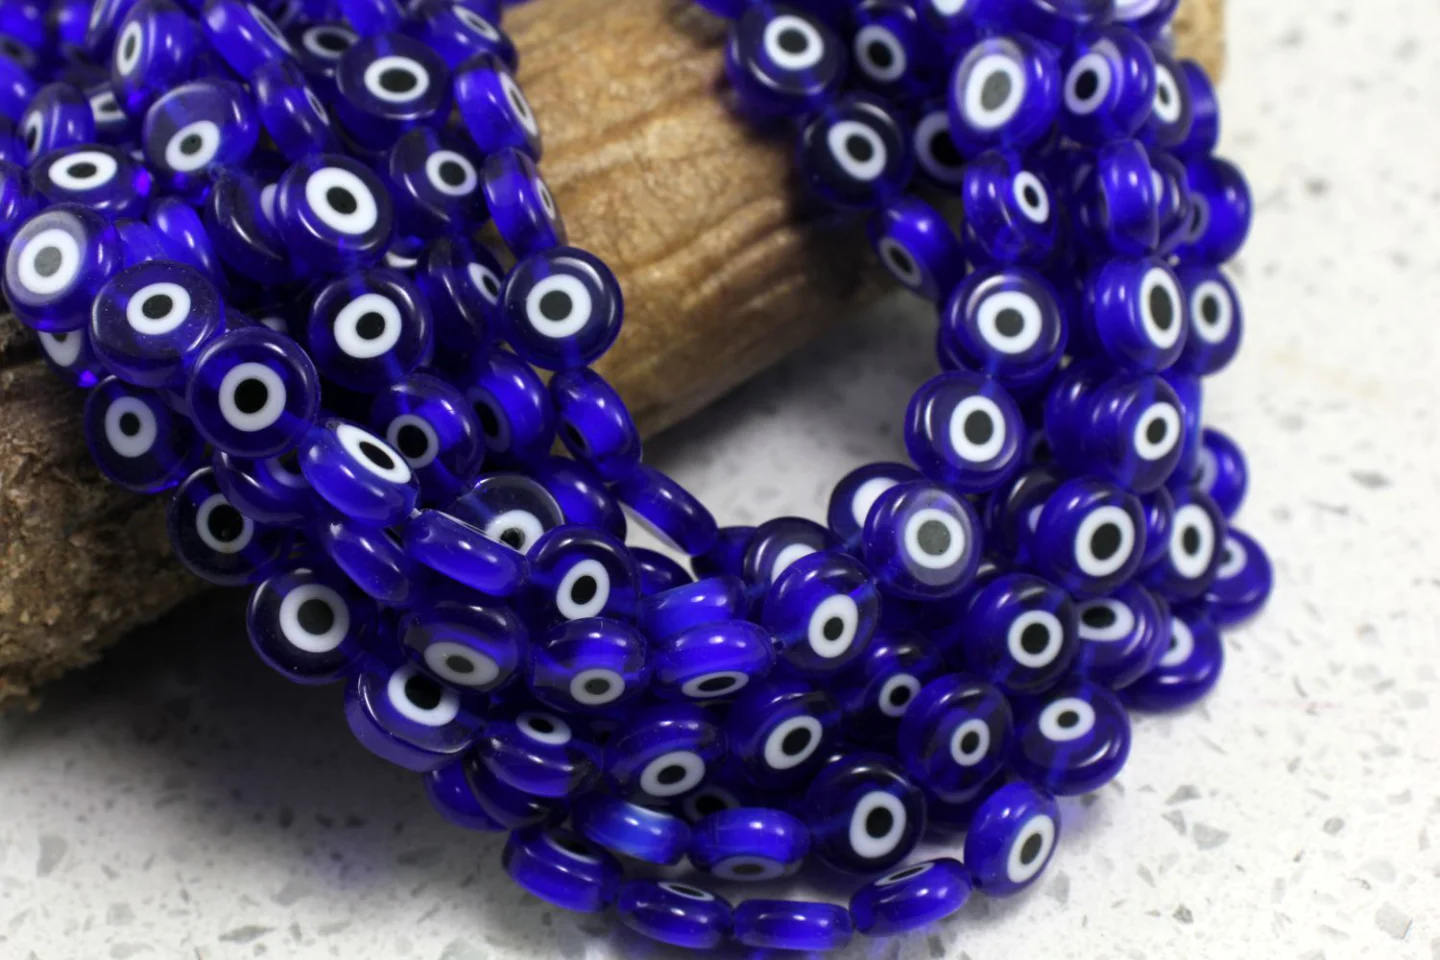 10mm-navy-blue-evil-eye-beads.